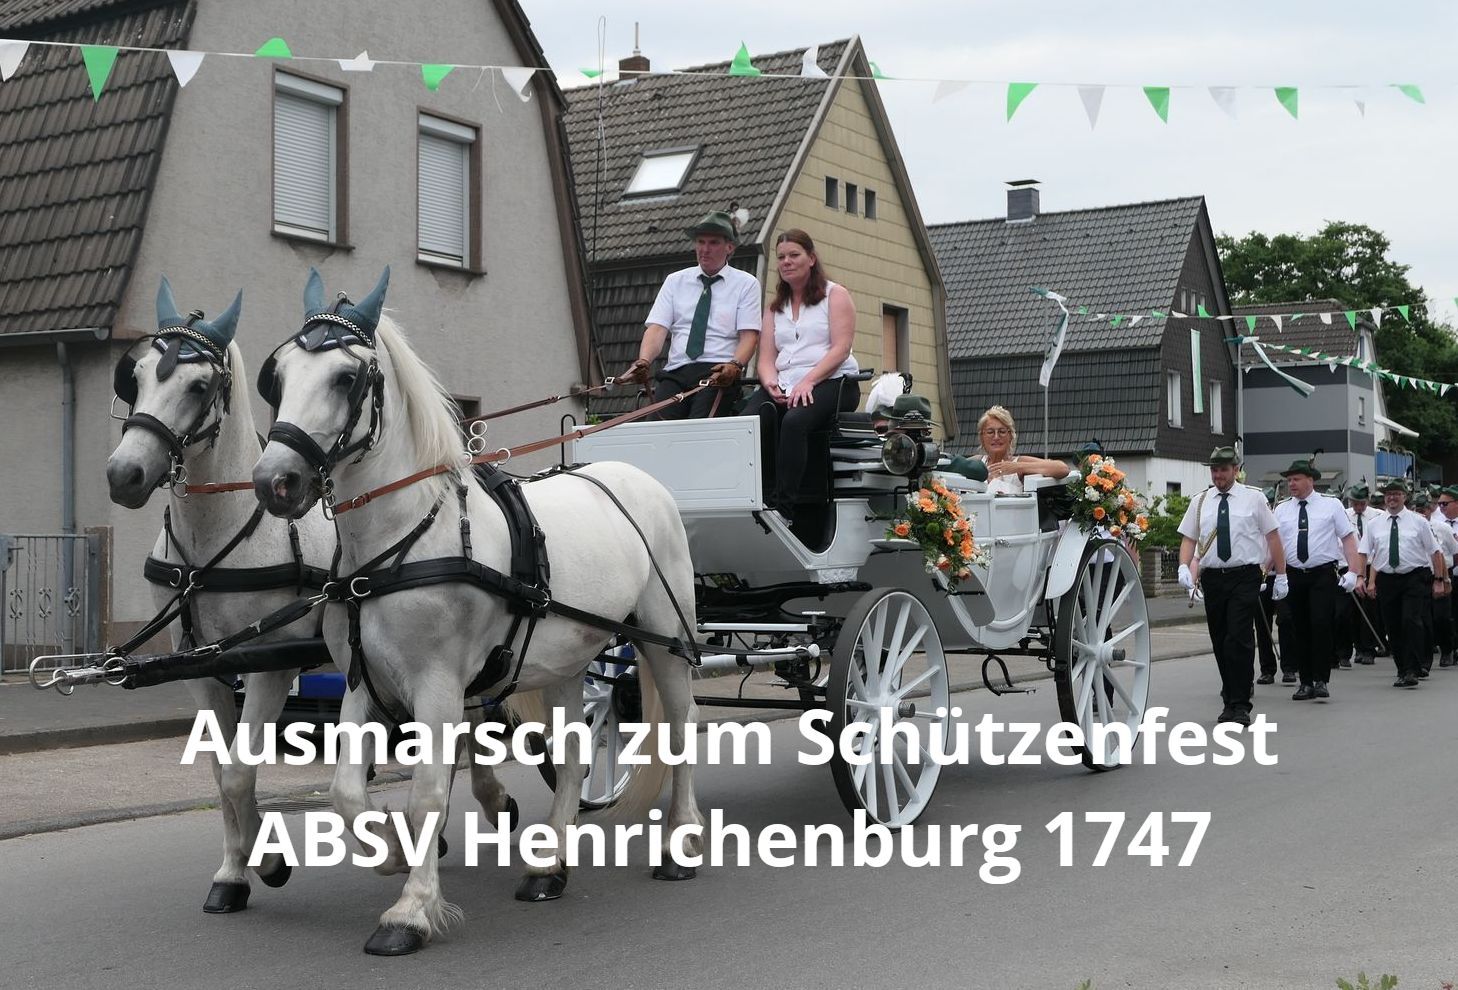 Galerie - Ausmarsch zum Schützenfest ABSV Henrichenburg 1747